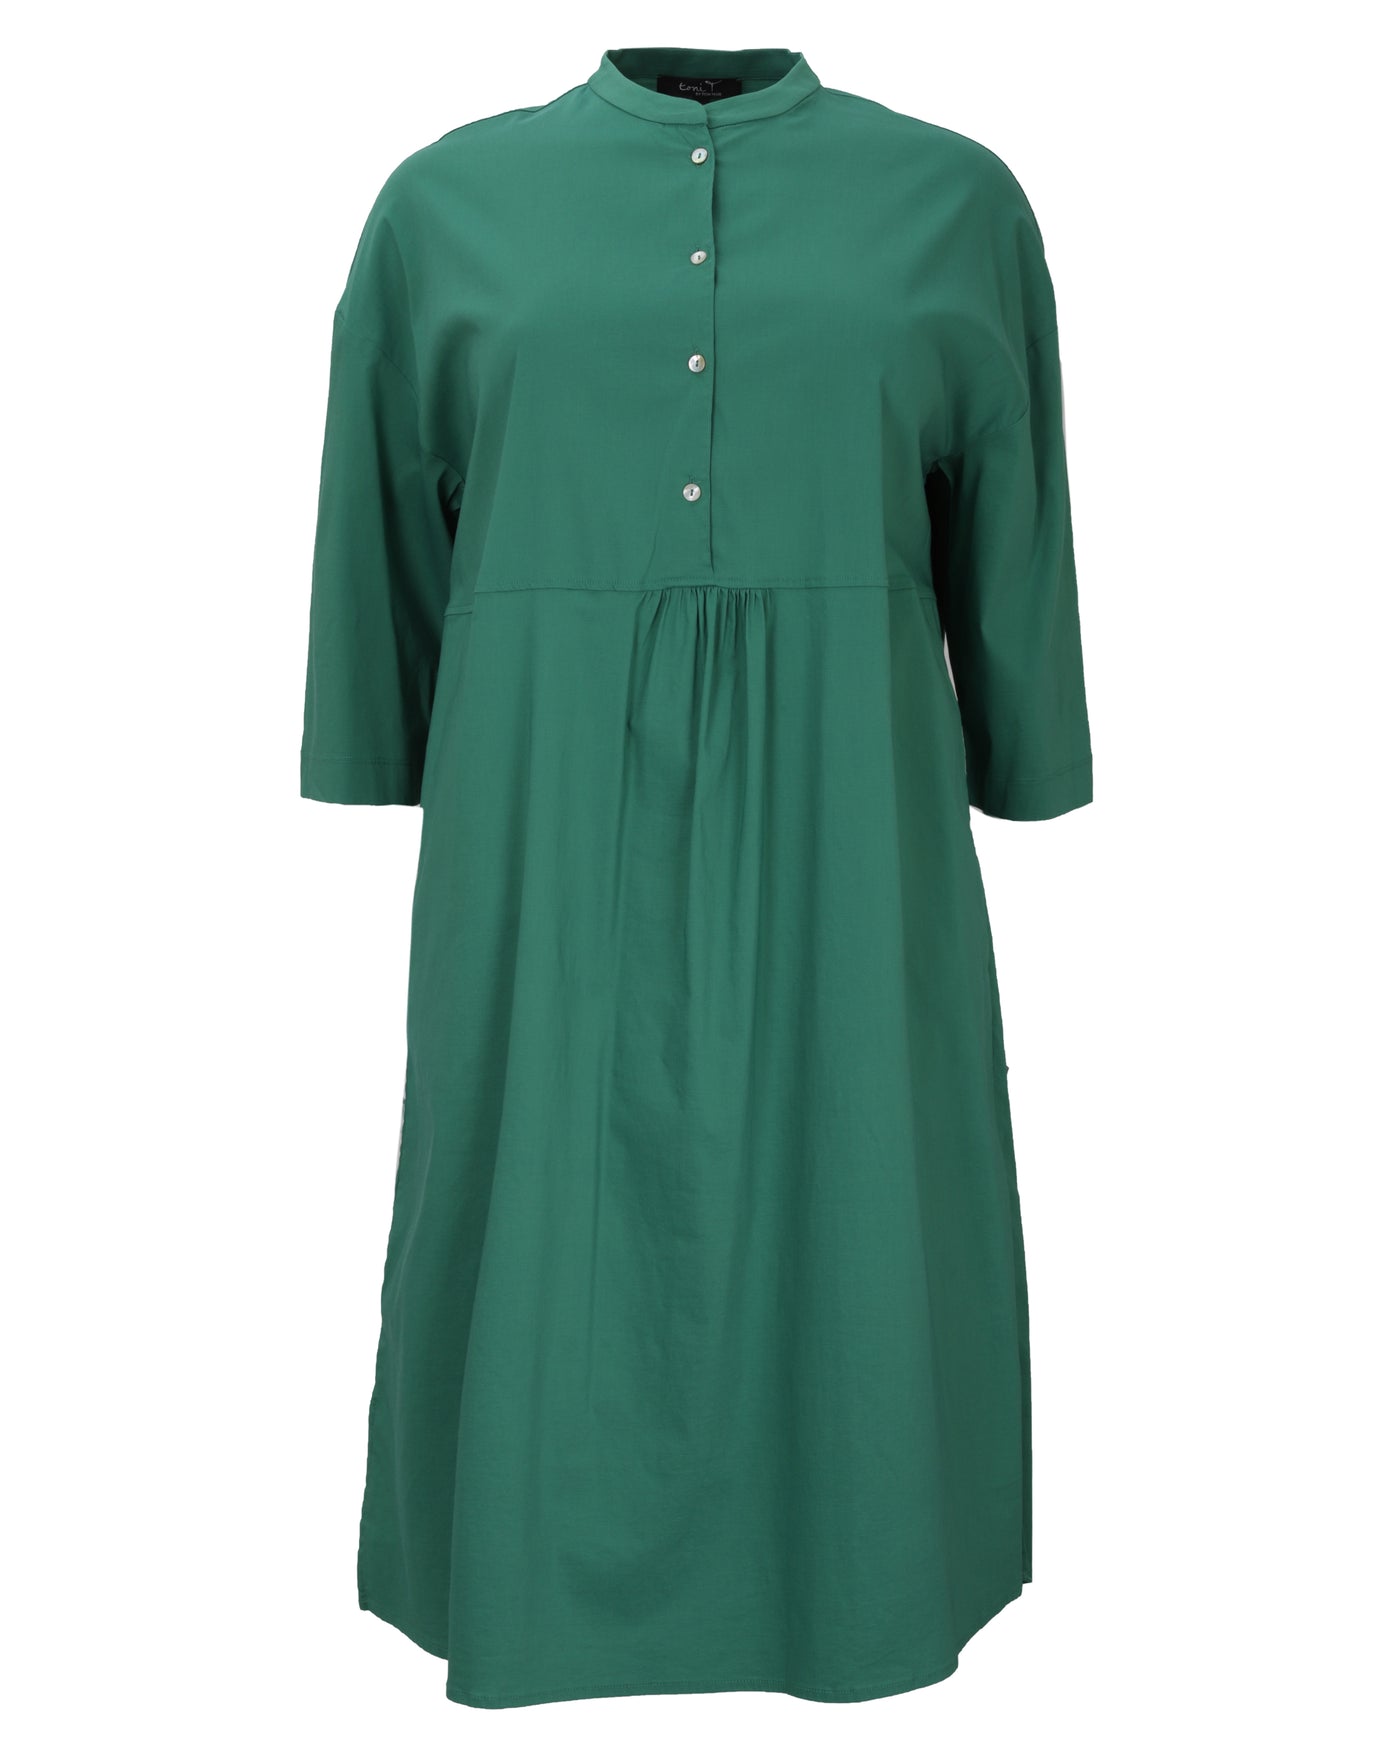 Toni T. Stretch Poplin 1/2 Placket Shirt Dress in Jade